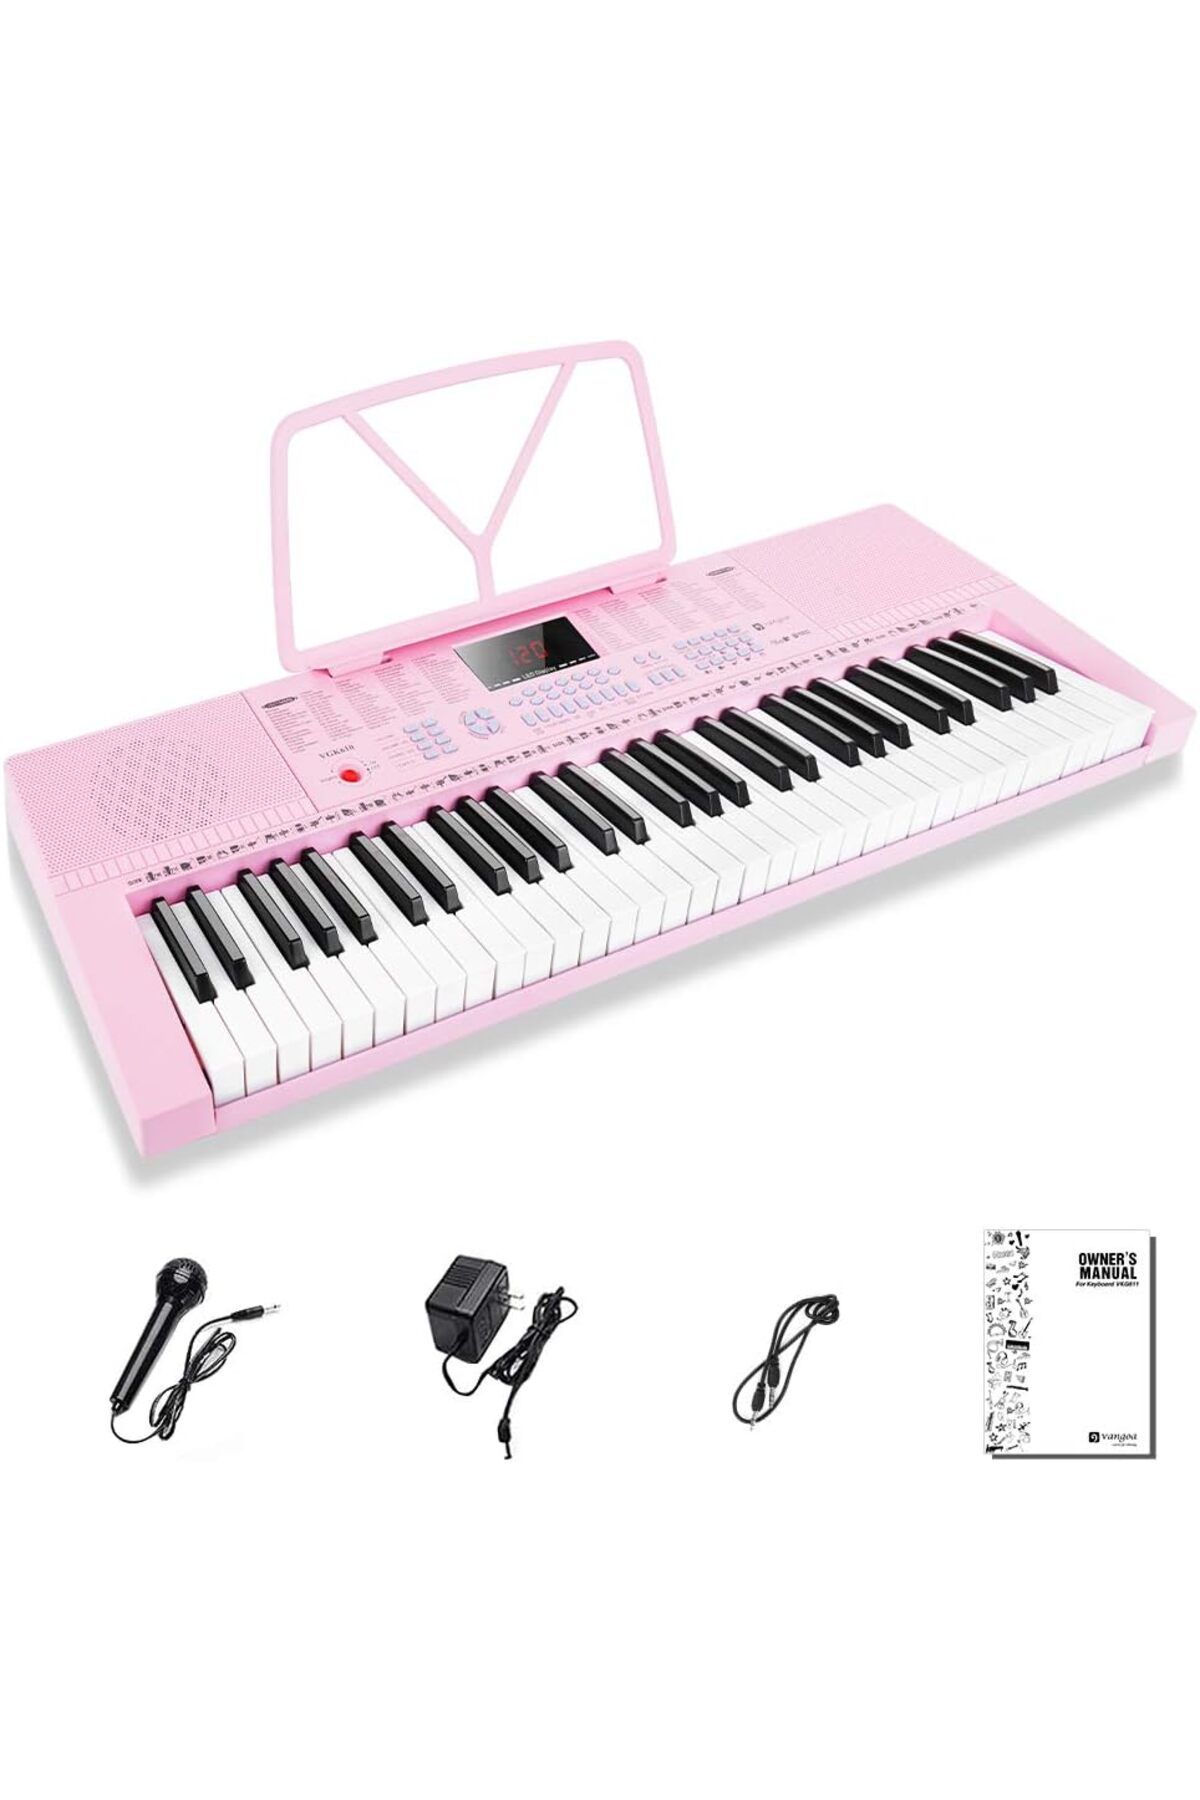 VANGOA Piyano klavyesi 61 mini tuşlar yeni başlayanlar için mikrofonlu taşınabilir müzik klavyesi